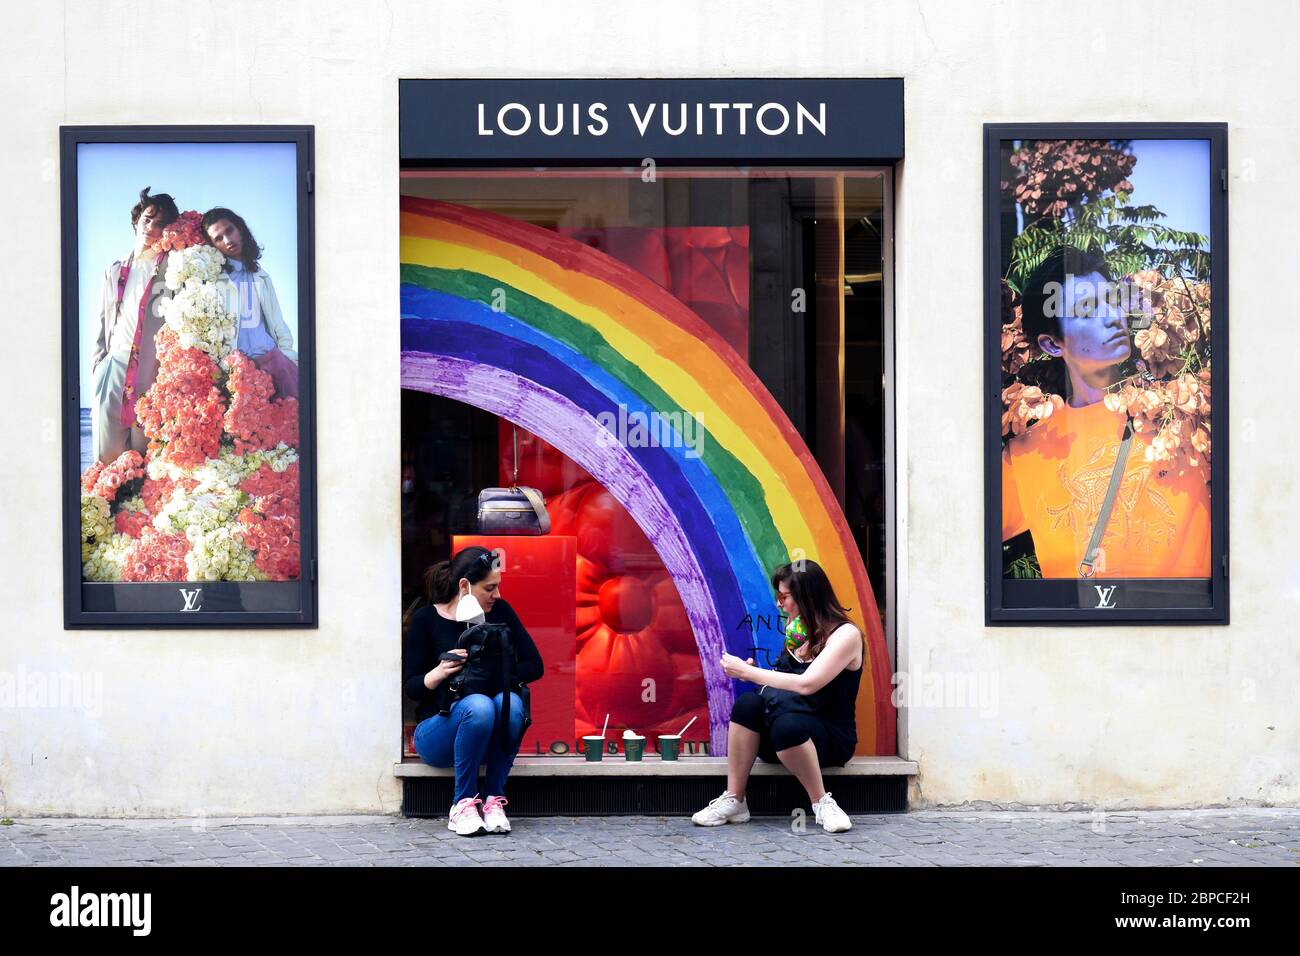 Zwei junge Freundinnen, die vor dem Fenster des Louis Vuitton Flagship Stores sitzen, machen eine entspannende Pause und ziehen während der Sperre für Coronavirus Covid 19 ihre medizinische Maske aus. Rom, Italien, Europa, Europäische Union, EU. Stockfoto